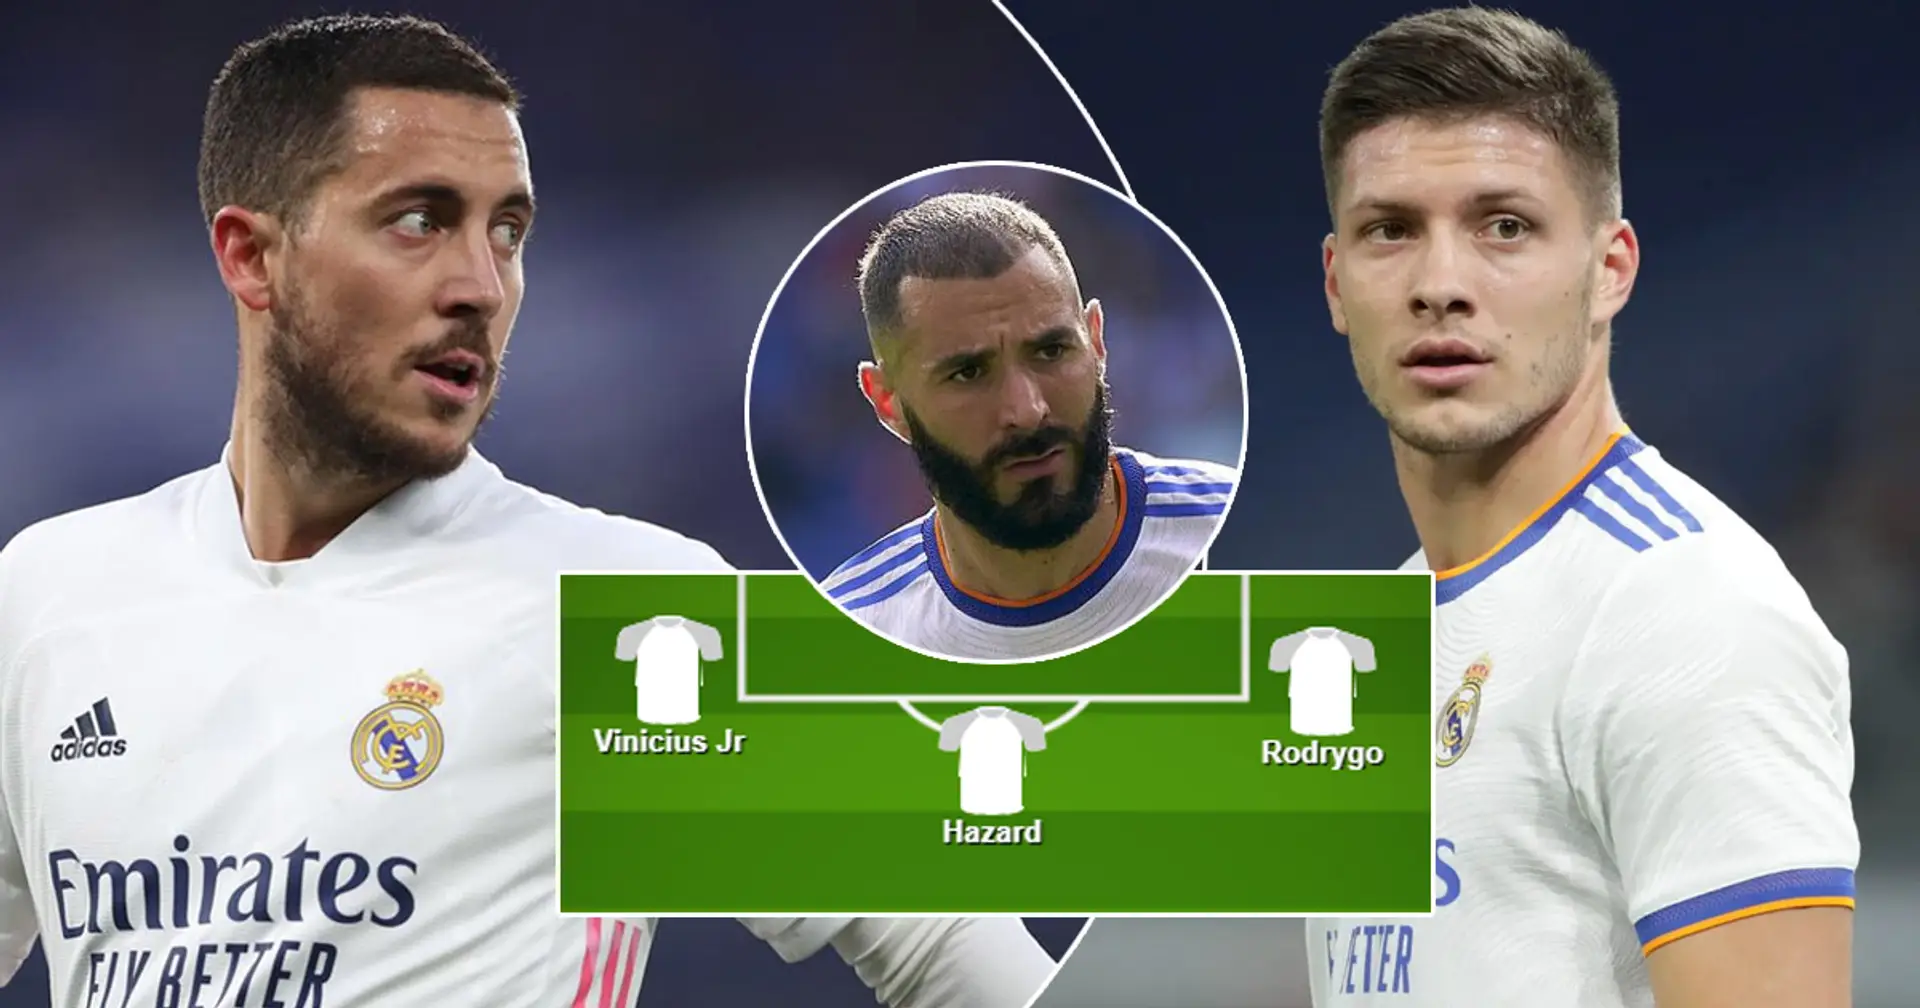 ¿Jovic o Hazard como falso 9? Elige tu XI favorito del Real Madrid para el choque ante el Elche entre 3 opciones